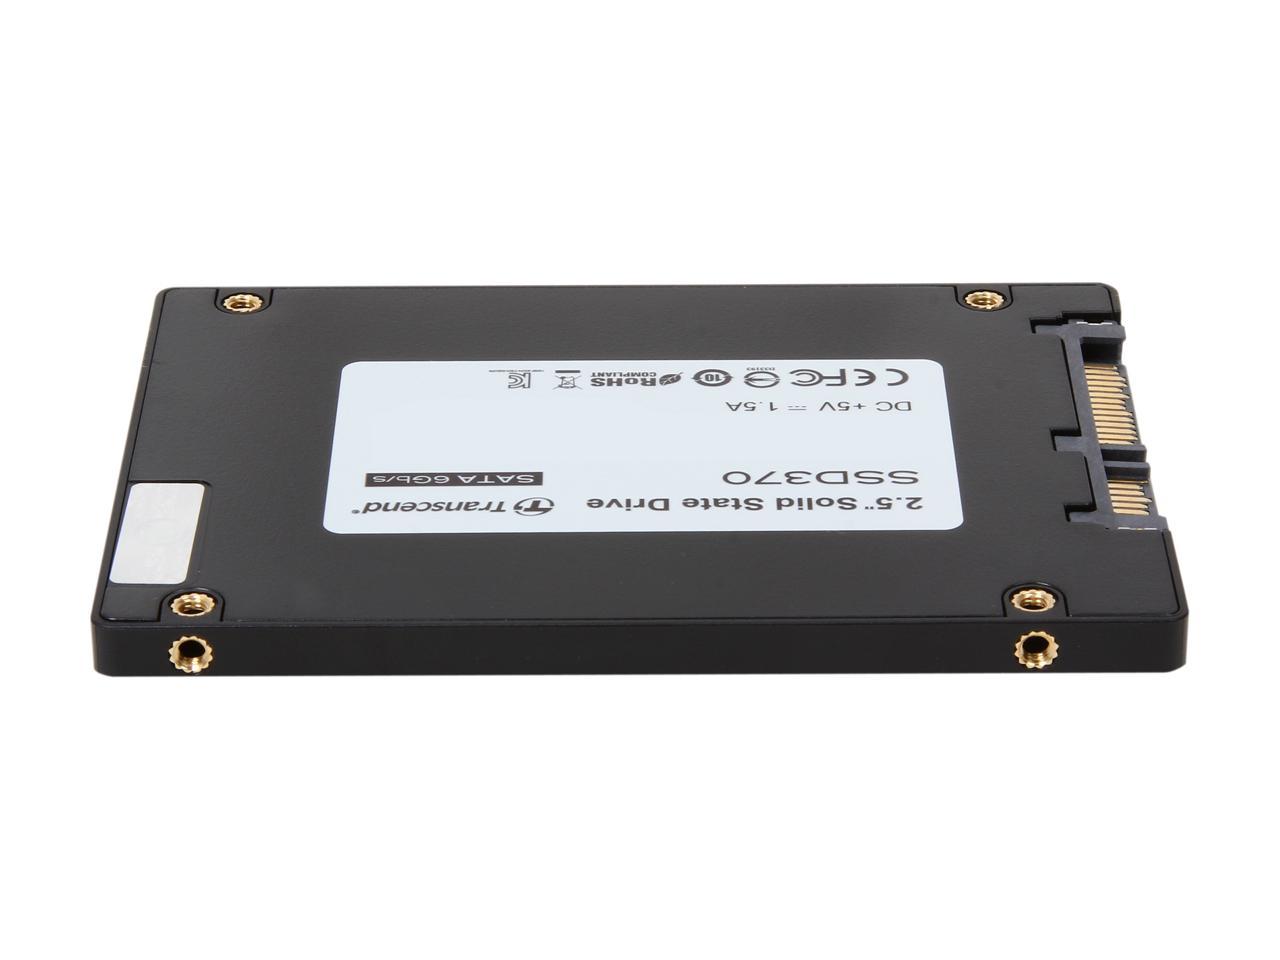 Transcend 2.5" 512GB SATA III MLC Internal Solid State Drive (SSD